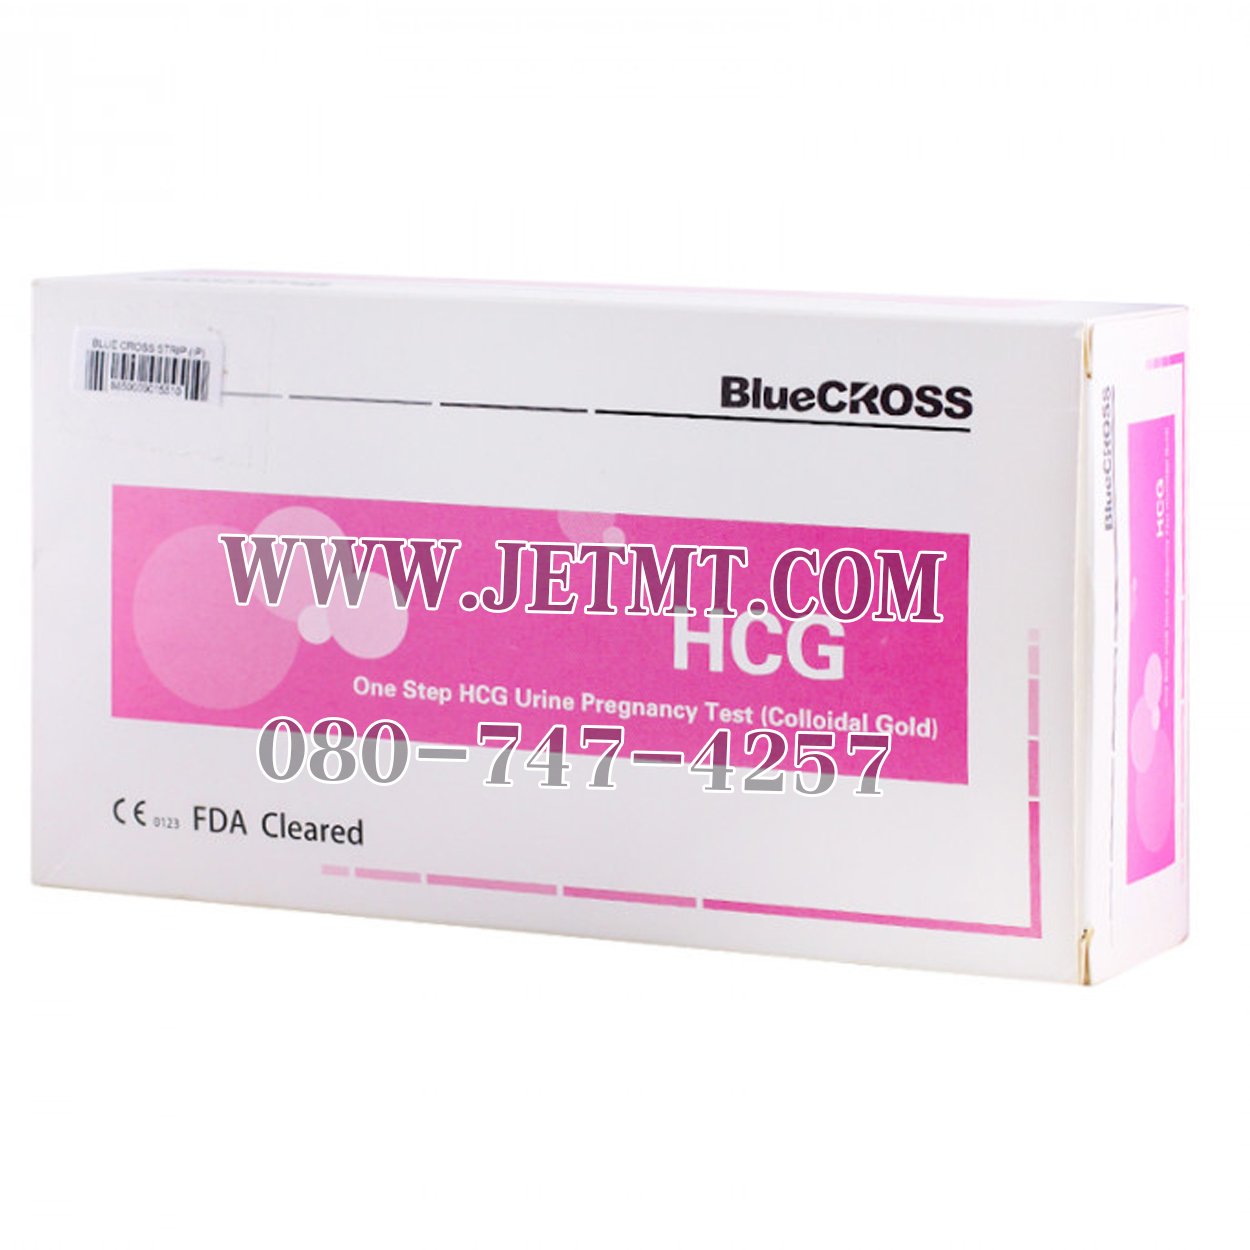 ชุดตรวจตั้งครรภ์ HCG ยี่ห้อ BlueCROSS (25ตลับ/กล่อง)